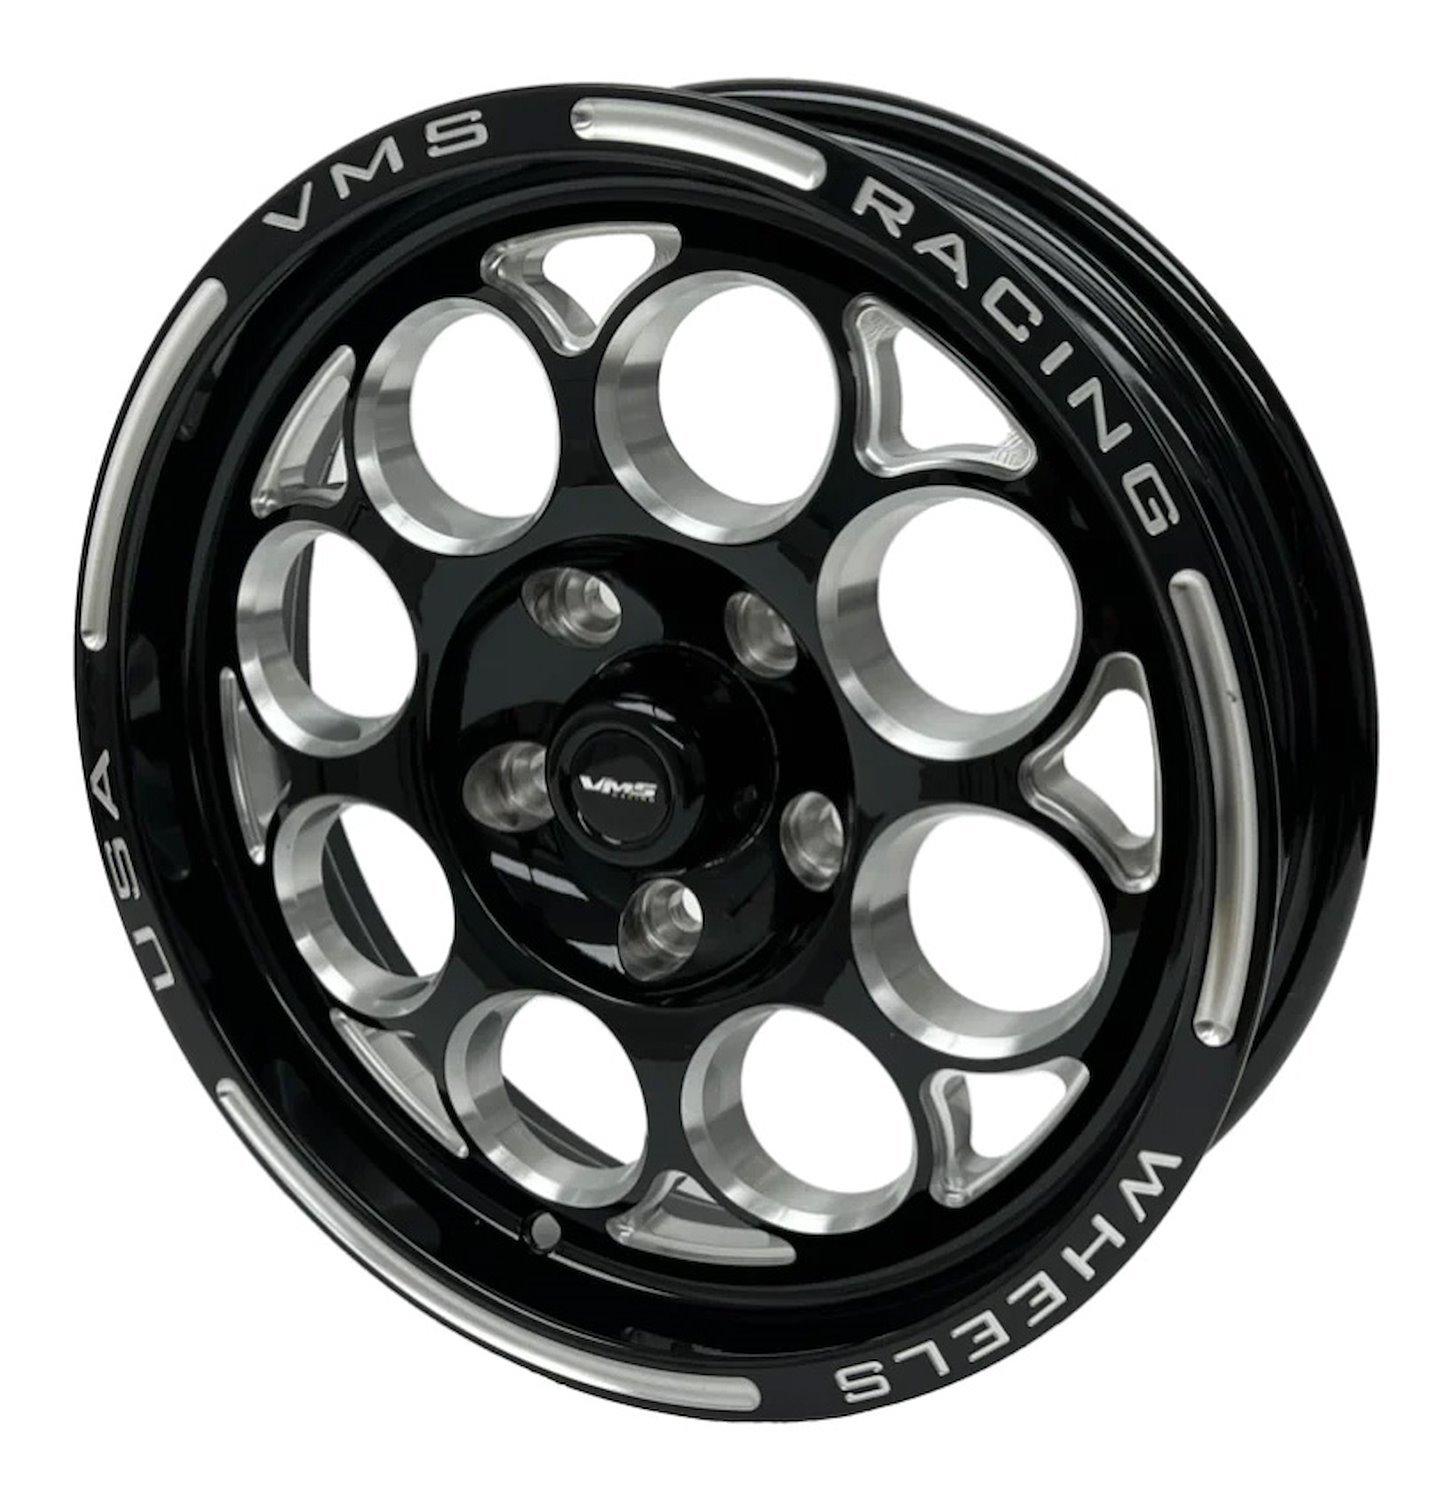 VWMO011 Modulo Wheel, Size: 15" x 3.5", Bolt Pattern: 5 x 4 1/2" (114.3 mm) [Finish: Gloss Black Milled]